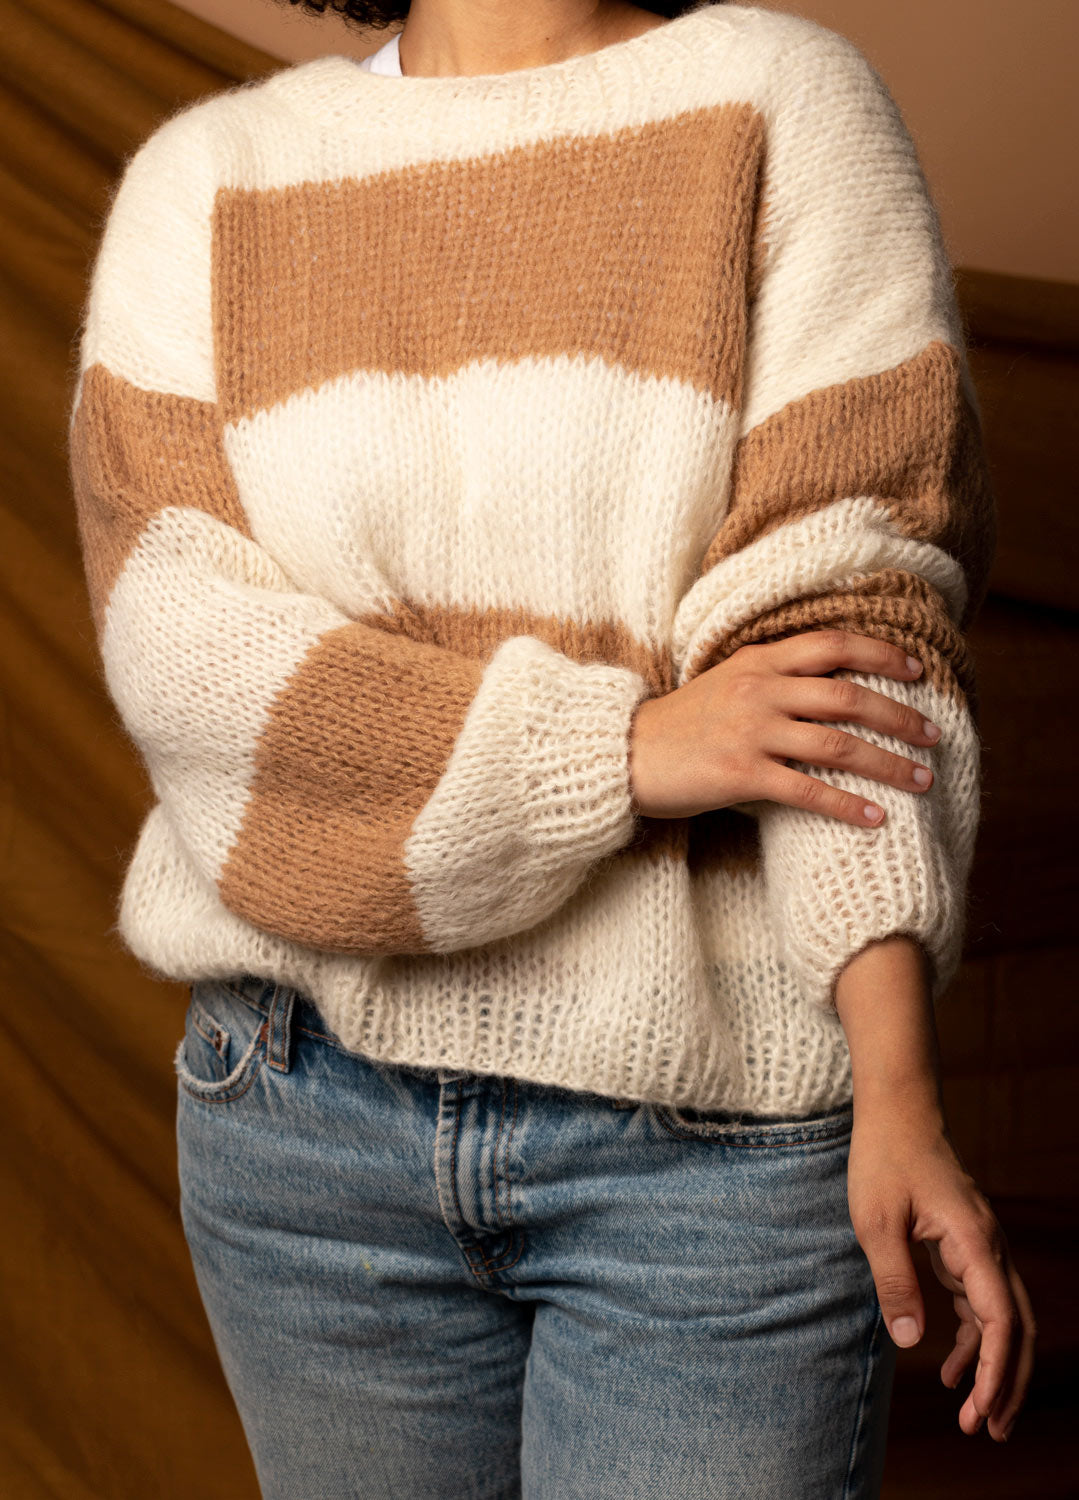 Luge Sweater kids- Summer edition – weareknitters